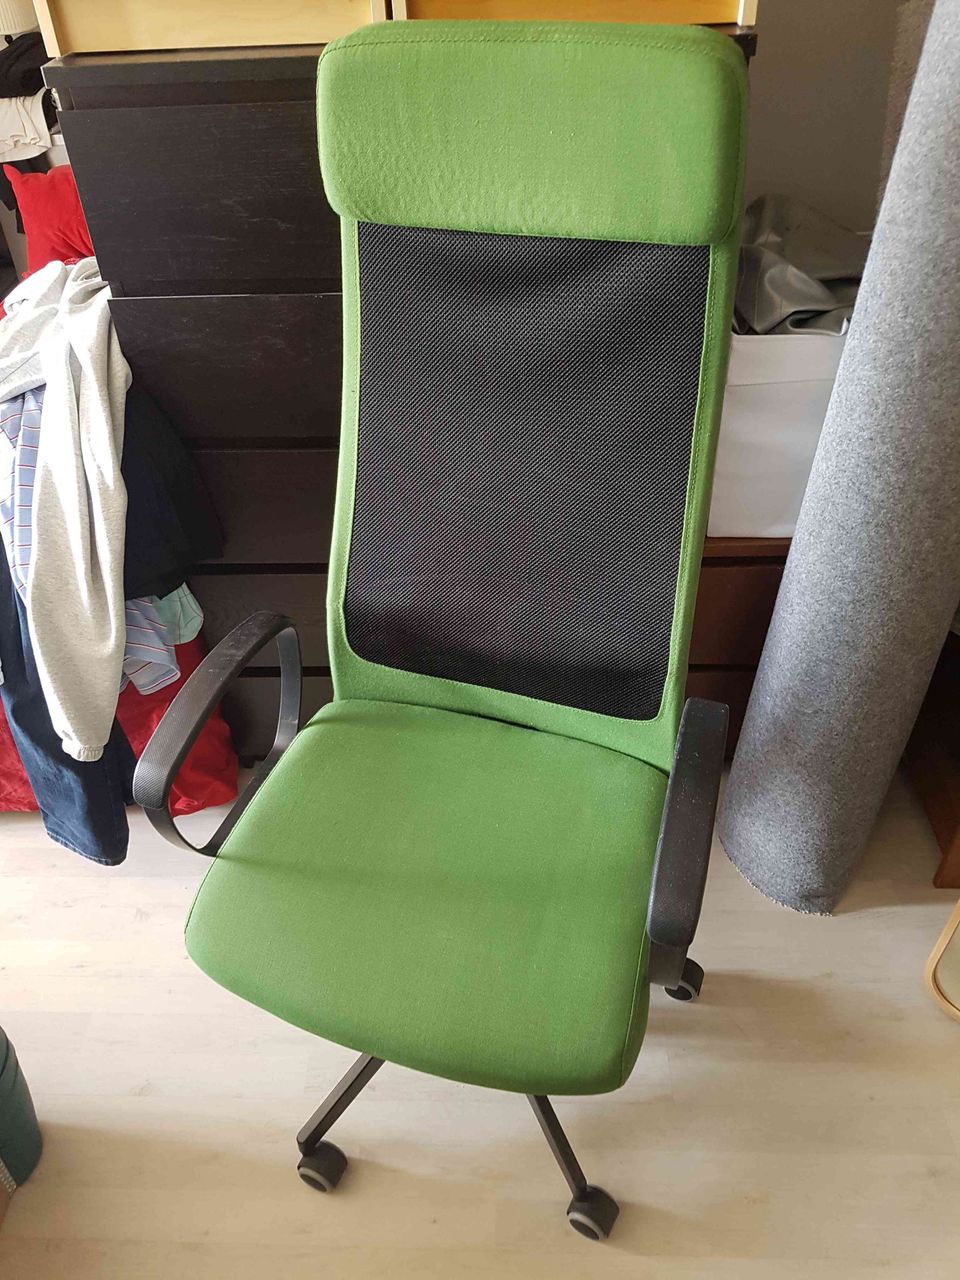 Ikea markus vihreä työtuoli - office chair